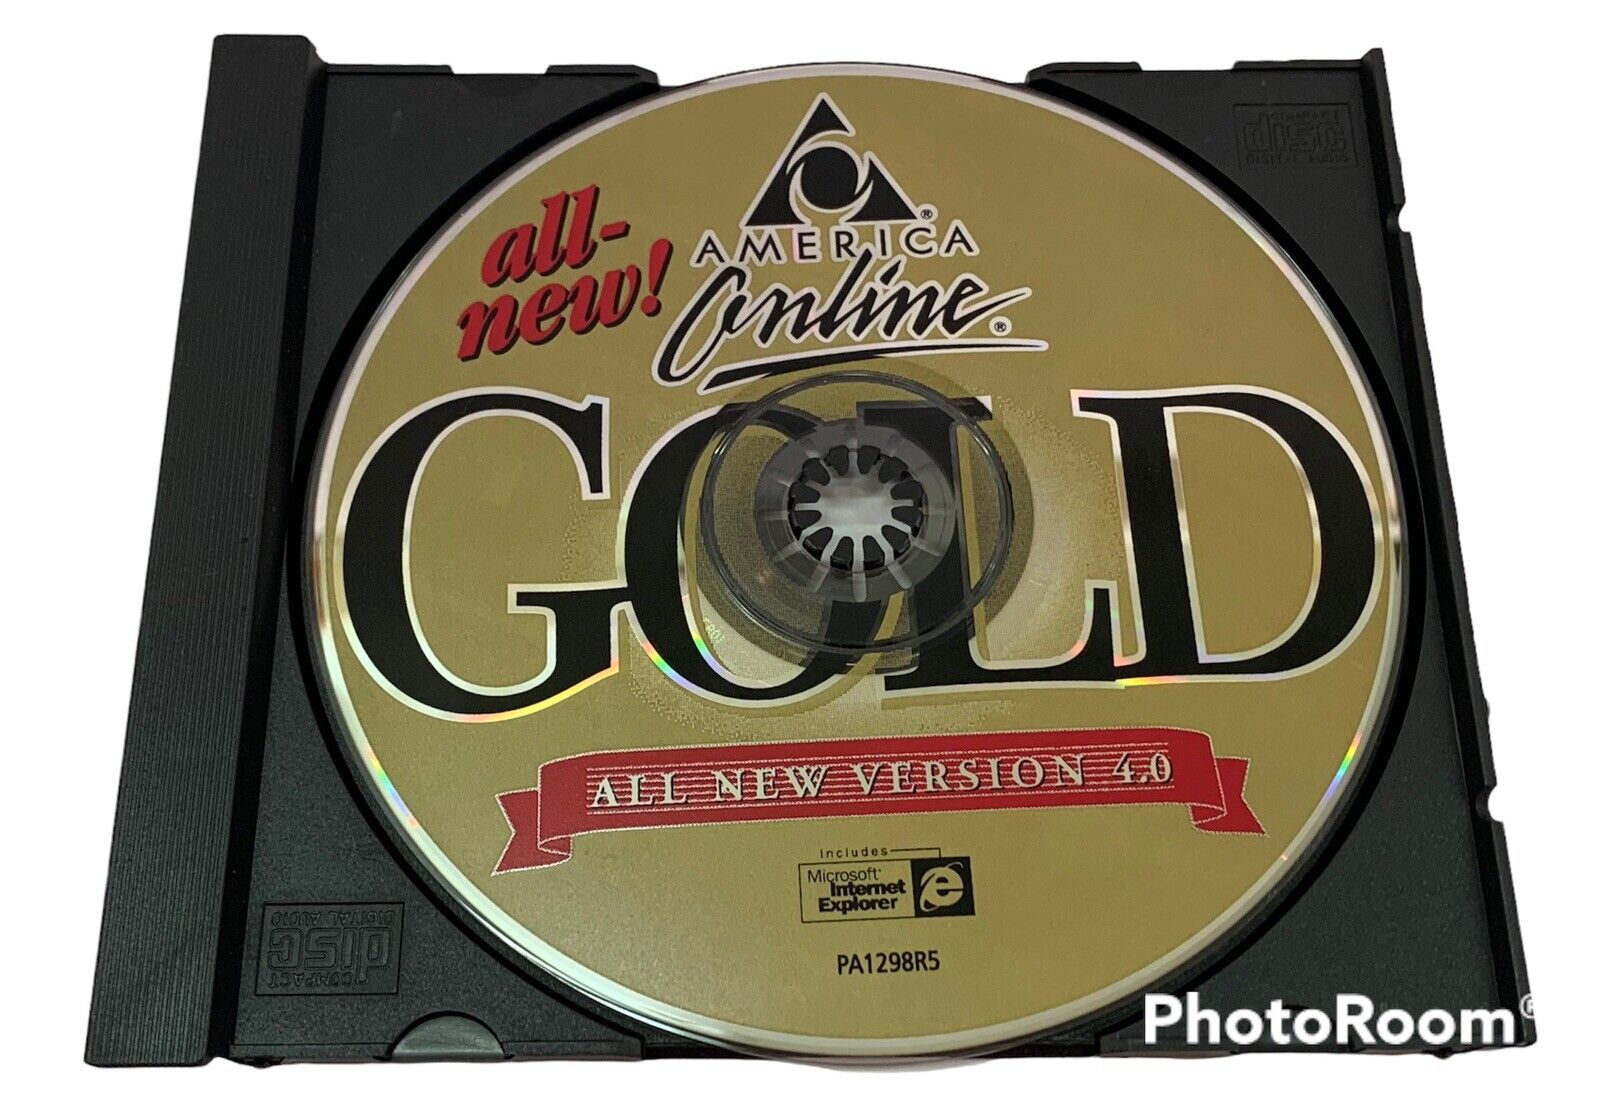 Vintage AOL America Online 4.0 CD Disk Software with Explorer